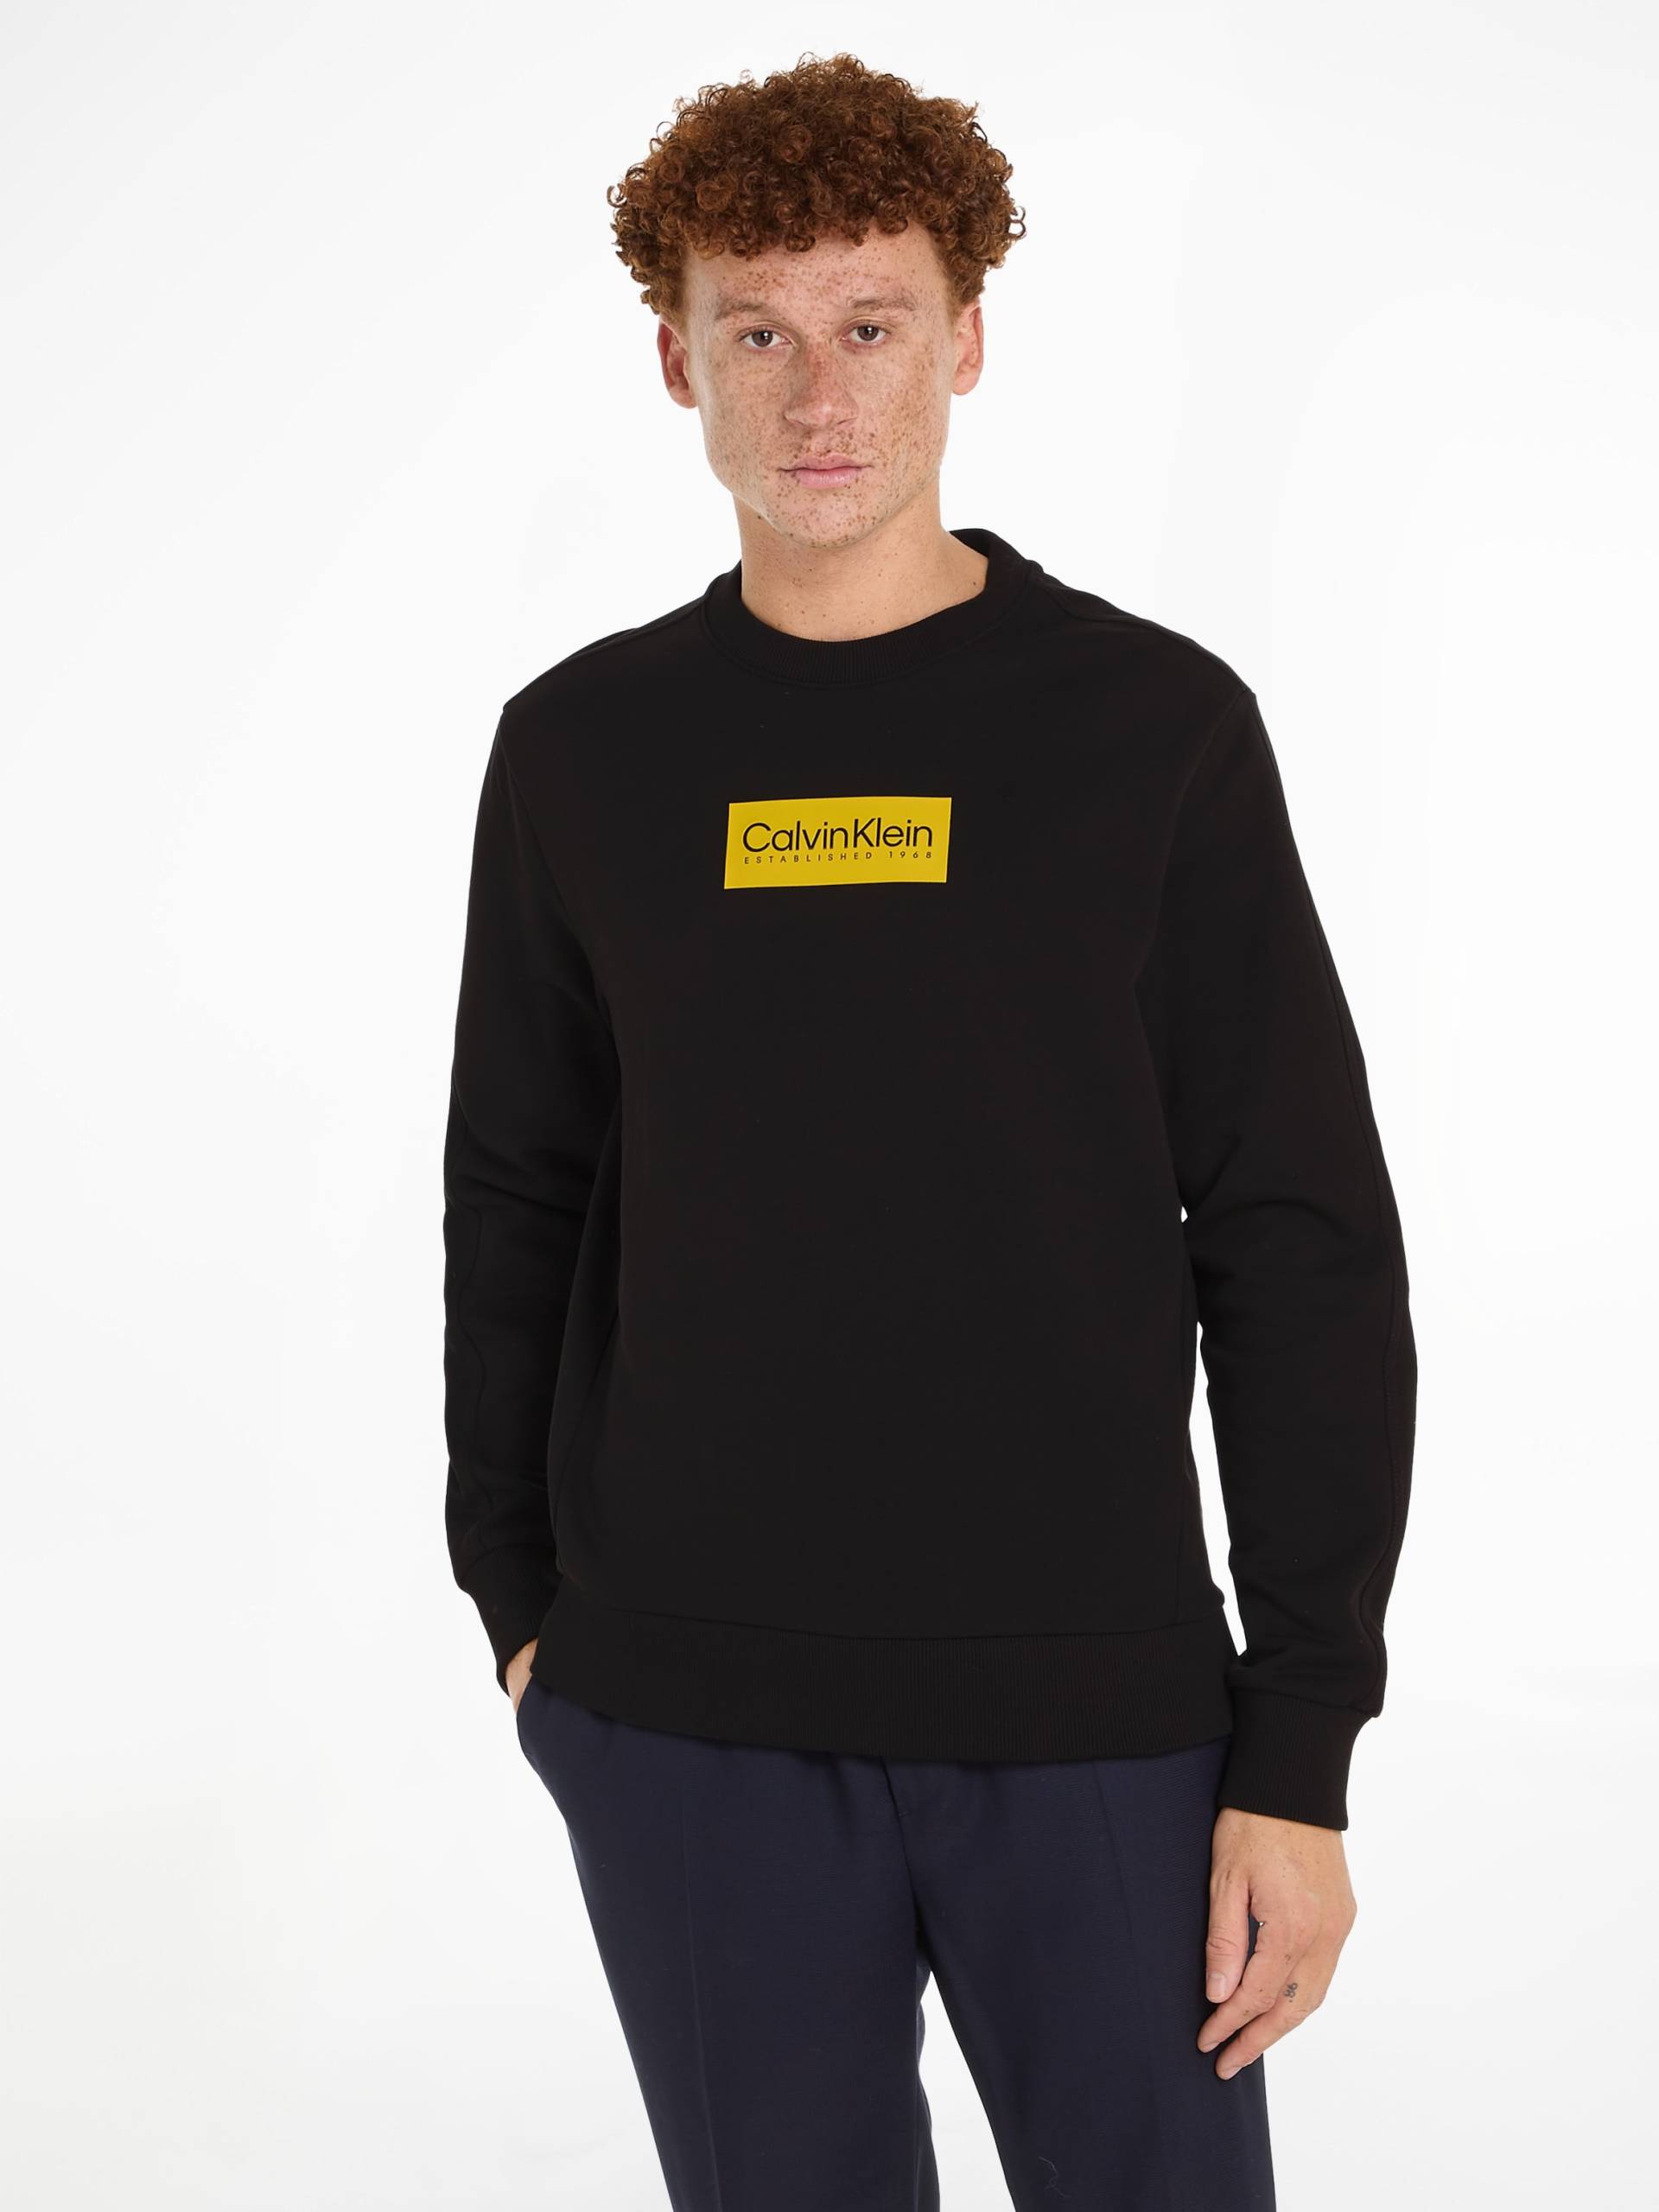 Calvin Klein Sweatshirt »RAISED RUBBER LOGO SWEATSHIRT« von Calvin Klein